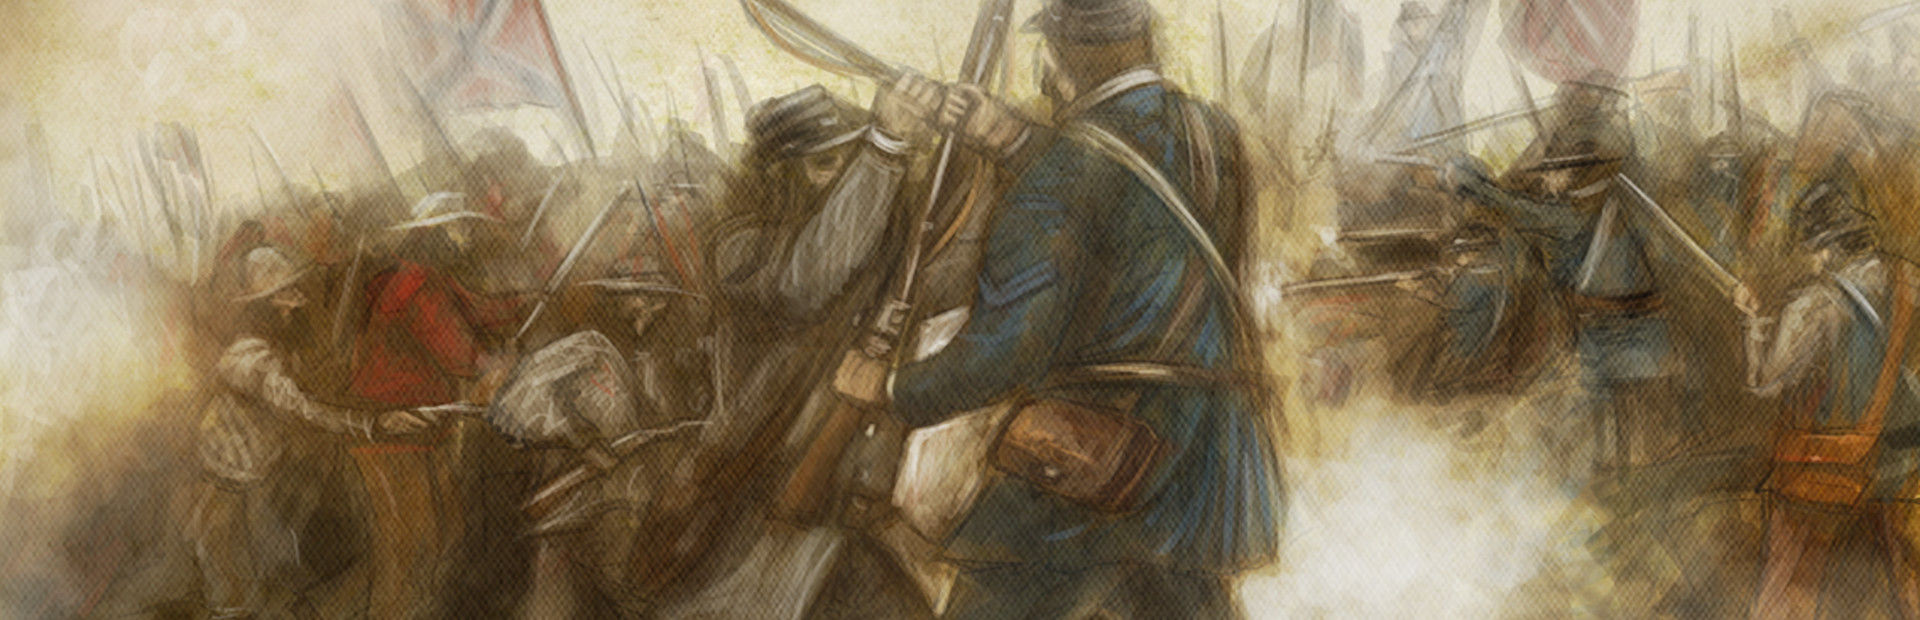 Civil War: 1863 cover image